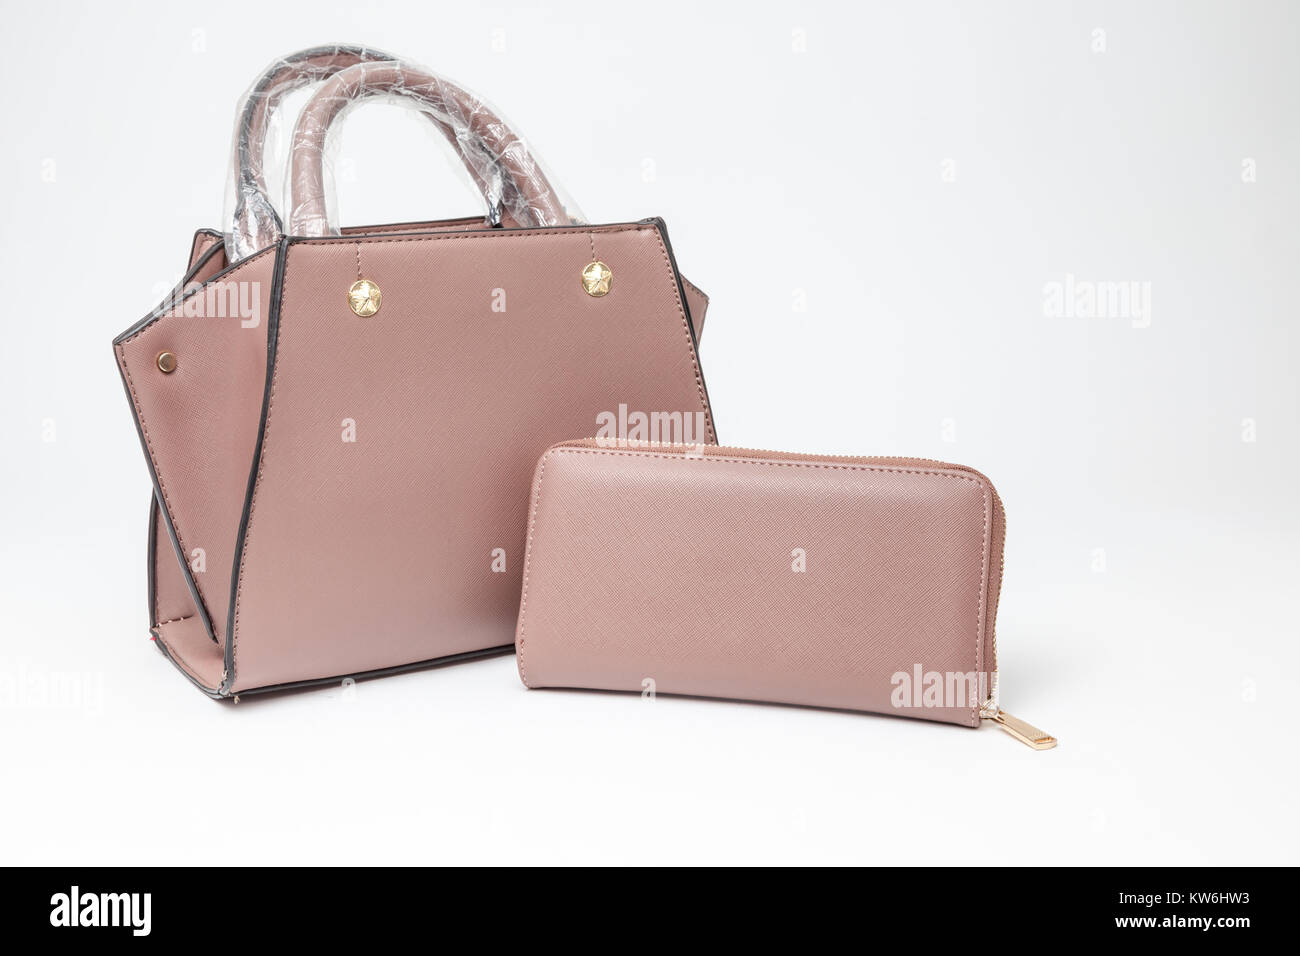 an handbag for all women or a purse fot all girls Stock Photo